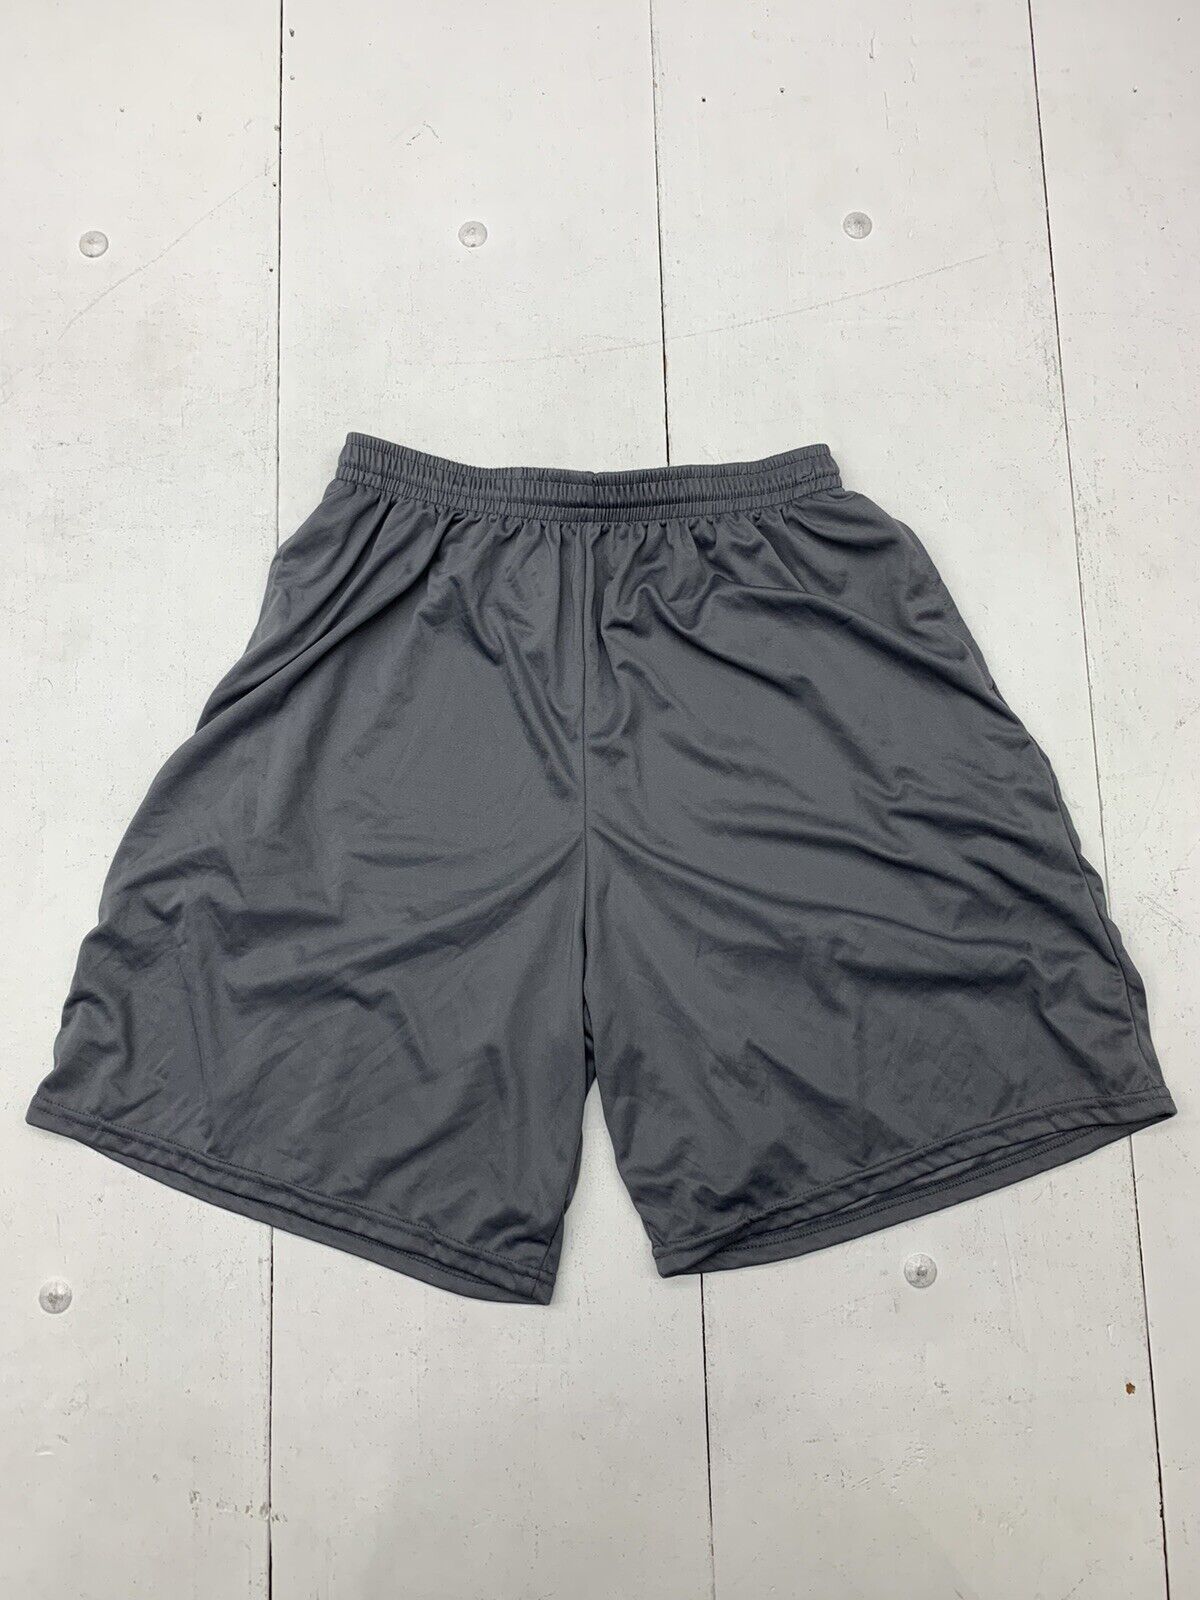 Augusta Sportswear Mens Grey Athletic Shorts Size XL